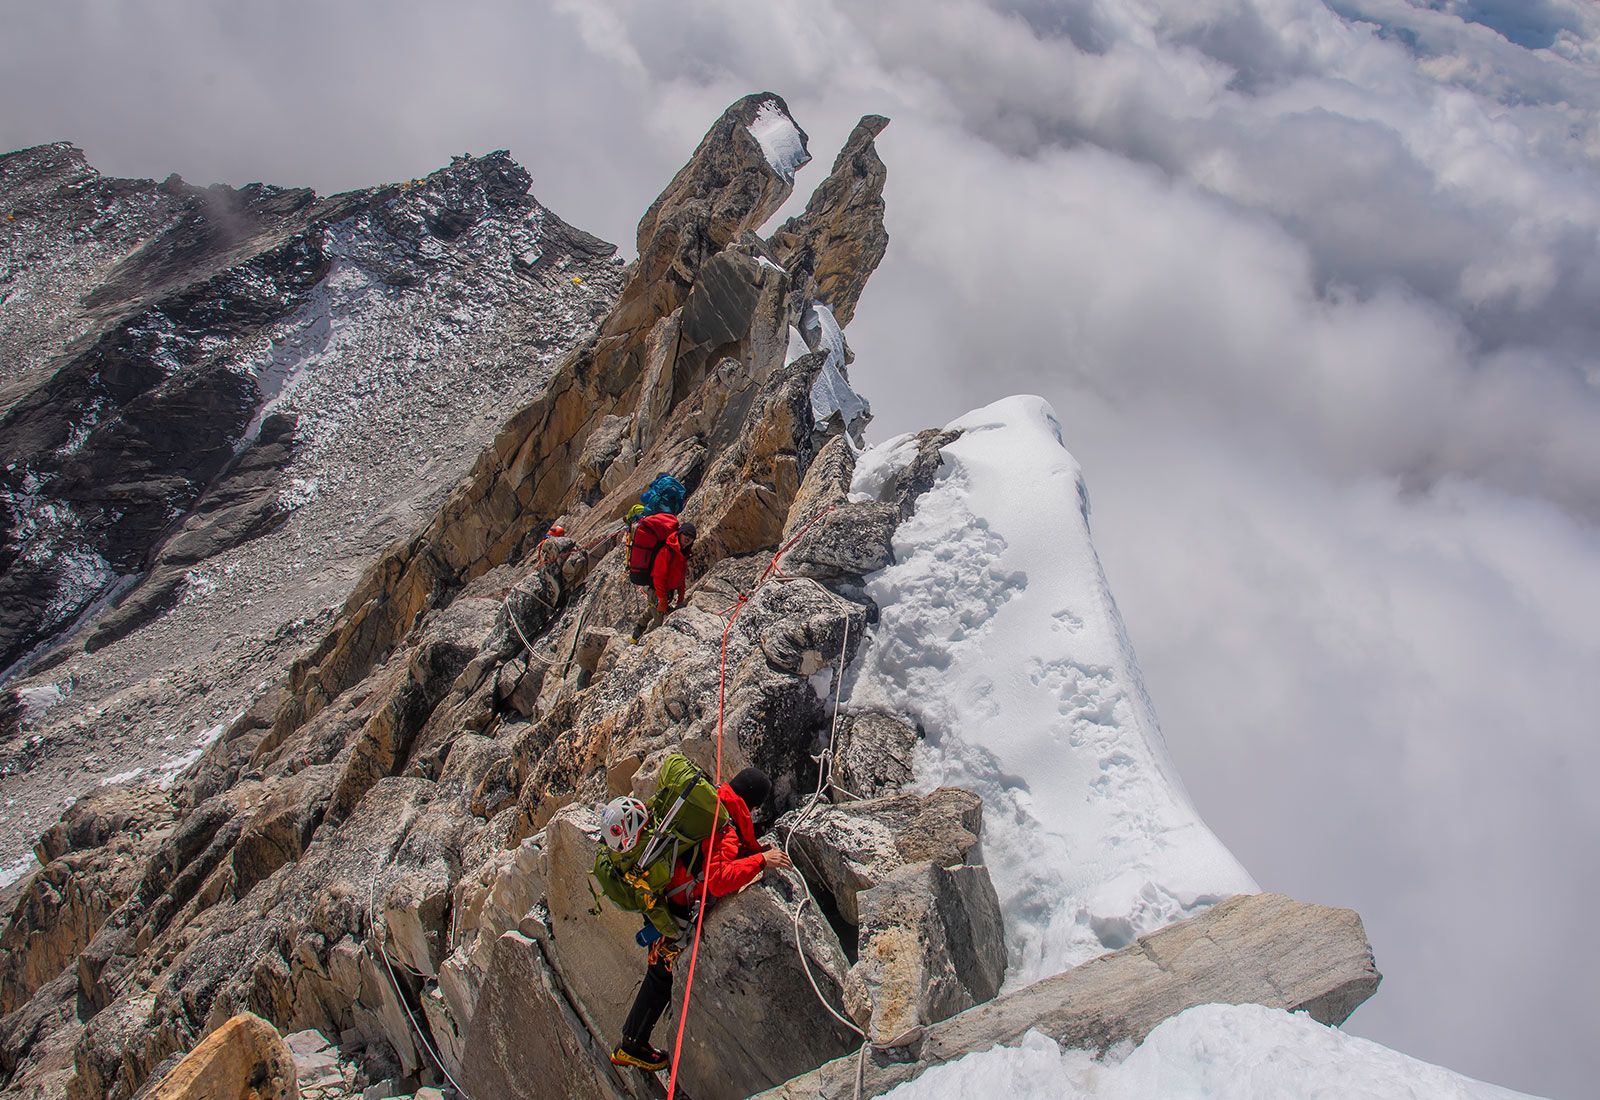 Ama Dablam Expedition - Peak Climbing